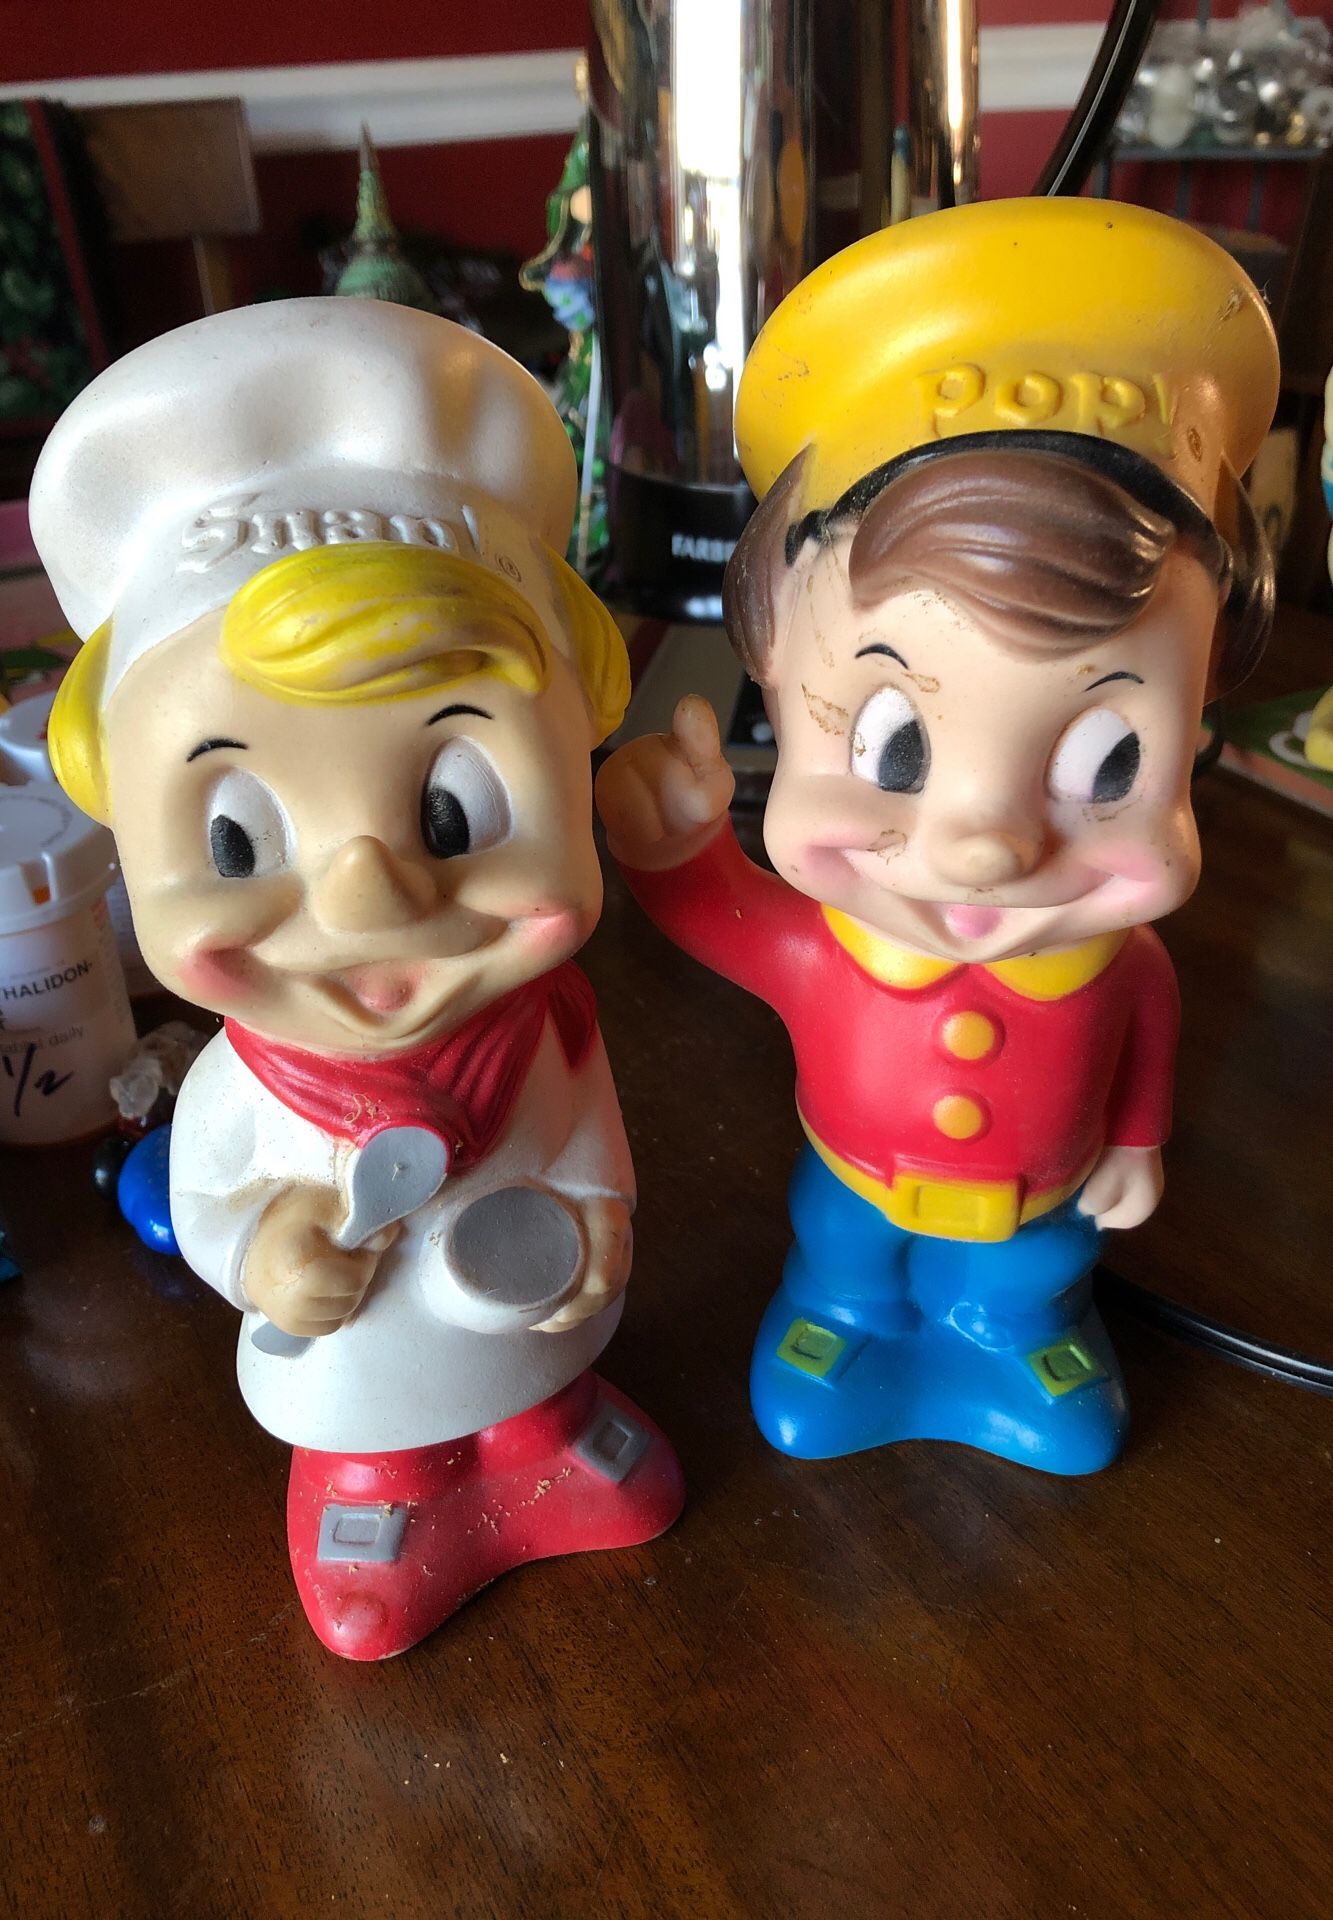 Antique rubber dolls